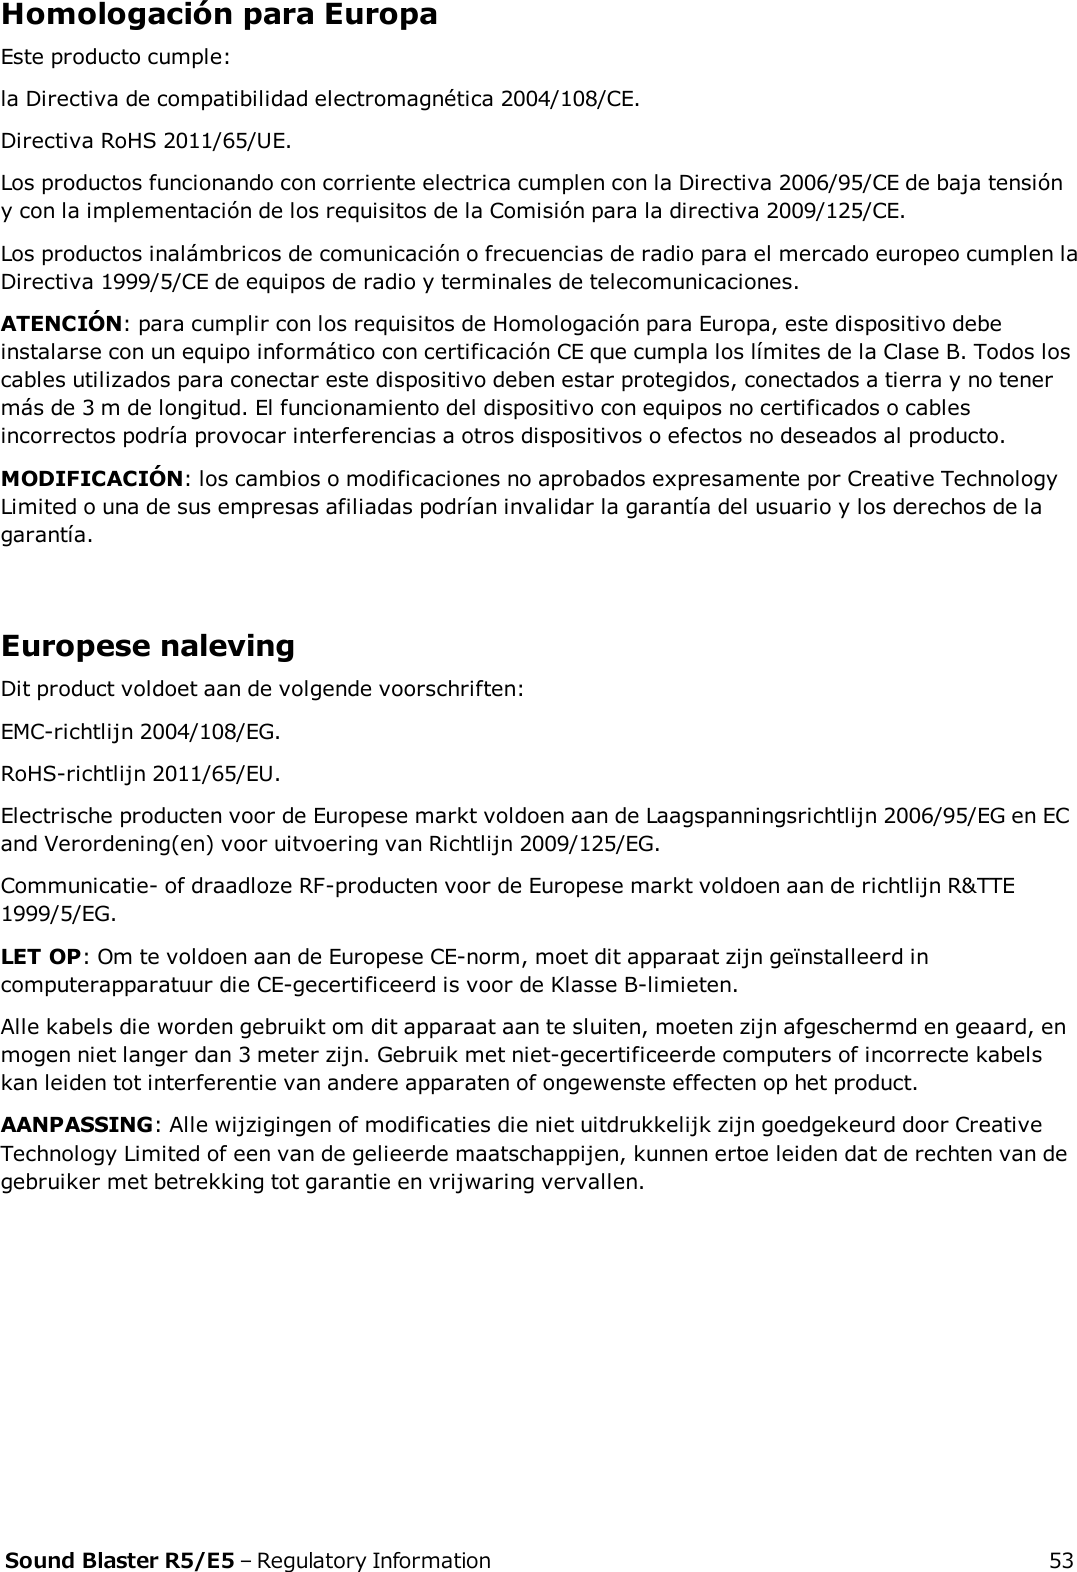 Homologación para EuropaEste producto cumple:la Directiva de compatibilidad electromagnética 2004/108/CE.Directiva RoHS 2011/65/UE.Los productos funcionando con corriente electrica cumplen con la Directiva 2006/95/CE de baja tensióny con la implementación de los requisitos de la Comisión para la directiva 2009/125/CE.Los productos inalámbricos de comunicación o frecuencias de radio para el mercado europeo cumplen laDirectiva 1999/5/CE de equipos de radio y terminales de telecomunicaciones.ATENCIÓN: para cumplir con los requisitos de Homologación para Europa, este dispositivo debeinstalarse con un equipo informático con certificación CE que cumpla los límites de la Clase B. Todos loscables utilizados para conectar este dispositivo deben estar protegidos, conectados a tierra y no tenermás de 3 m de longitud. El funcionamiento del dispositivo con equipos no certificados o cablesincorrectos podría provocar interferencias a otros dispositivos o efectos no deseados al producto.MODIFICACIÓN: los cambios o modificaciones no aprobados expresamente por Creative TechnologyLimited o una de sus empresas afiliadas podrían invalidar la garantía del usuario y los derechos de lagarantía.Europese nalevingDit product voldoet aan de volgende voorschriften:EMC-richtlijn 2004/108/EG.RoHS-richtlijn 2011/65/EU.Electrische producten voor de Europese markt voldoen aan de Laagspanningsrichtlijn 2006/95/EG en ECand Verordening(en) voor uitvoering van Richtlijn 2009/125/EG.Communicatie- of draadloze RF-producten voor de Europese markt voldoen aan de richtlijn R&amp;TTE1999/5/EG.LET OP: Om te voldoen aan de Europese CE-norm, moet dit apparaat zijn geïnstalleerd incomputerapparatuur die CE-gecertificeerd is voor de Klasse B-limieten.Alle kabels die worden gebruikt om dit apparaat aan te sluiten, moeten zijn afgeschermd en geaard, enmogen niet langer dan 3 meter zijn. Gebruik met niet-gecertificeerde computers of incorrecte kabelskan leiden tot interferentie van andere apparaten of ongewenste effecten op het product.AANPASSING: Alle wijzigingen of modificaties die niet uitdrukkelijk zijn goedgekeurd door CreativeTechnology Limited of een van de gelieerde maatschappijen, kunnen ertoe leiden dat de rechten van degebruiker met betrekking tot garantie en vrijwaring vervallen.Sound Blaster R5/E5 – Regulatory Information 53